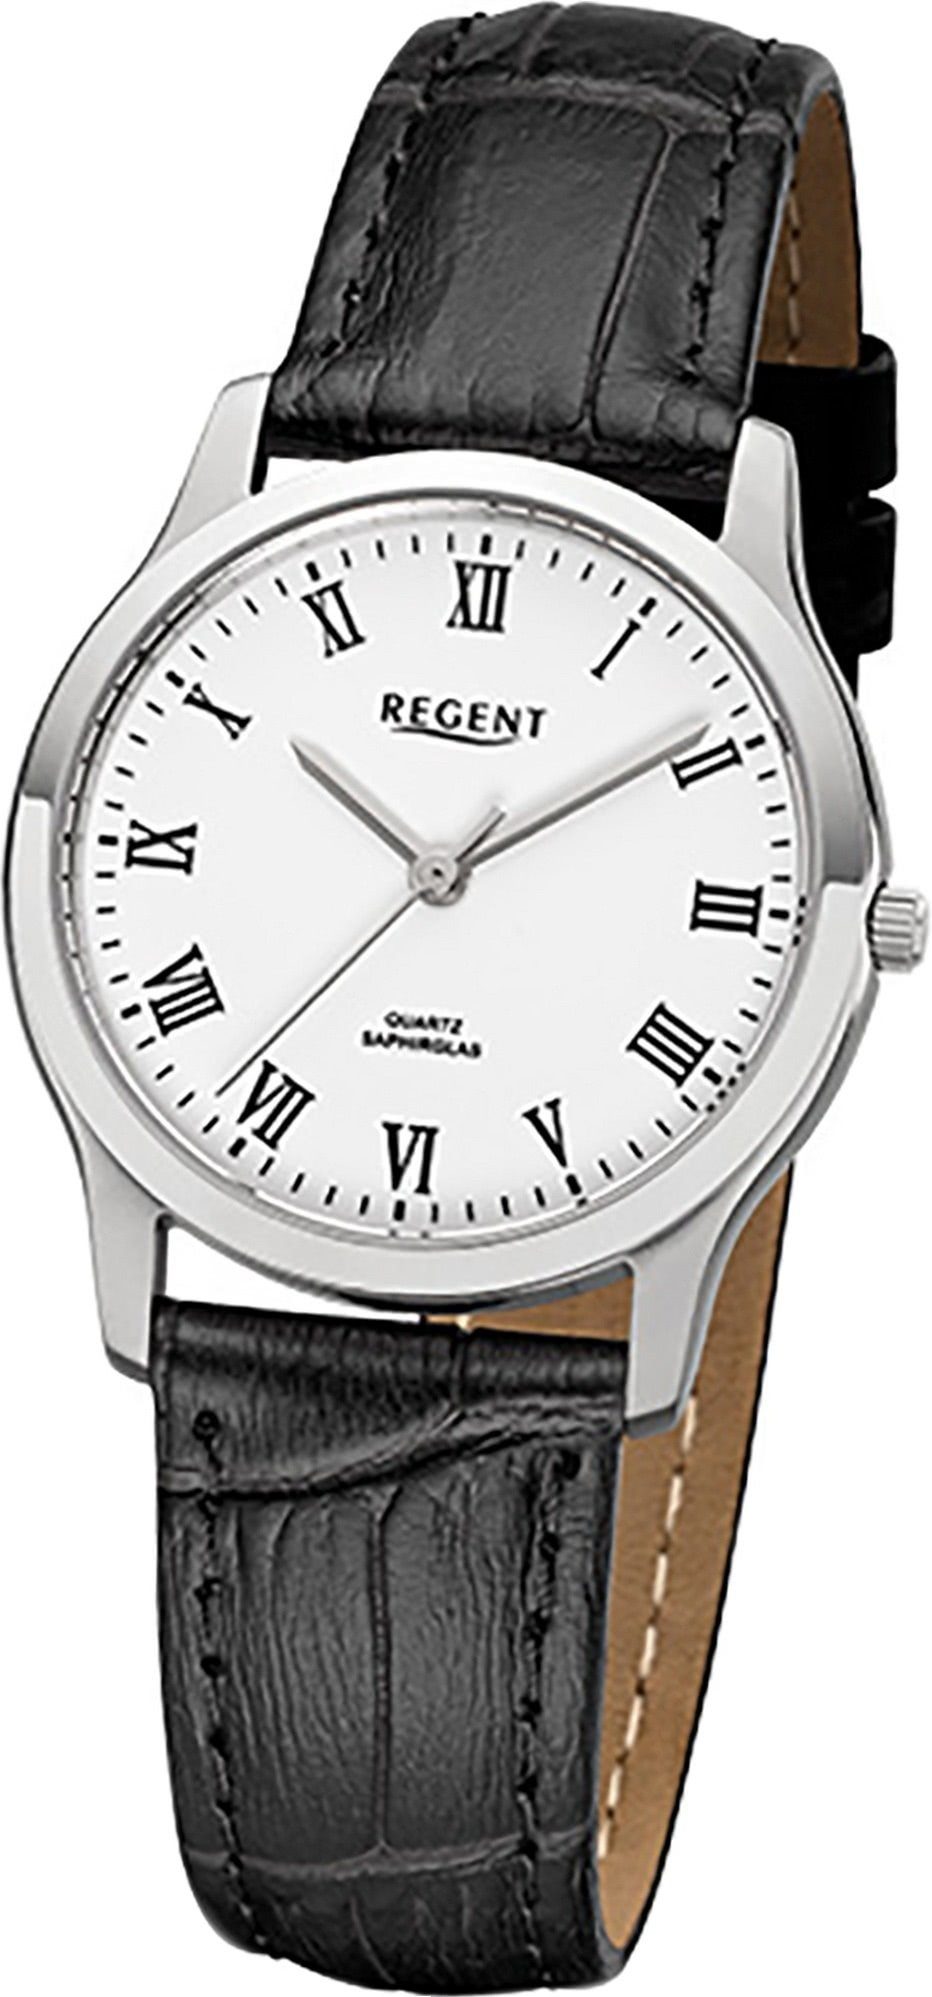 Regent Quarzuhr Regent Leder Damen Uhr F-1072 Quarzuhr, Damenuhr Lederarmband schwarz, rundes Gehäuse, klein (ca. 30mm)